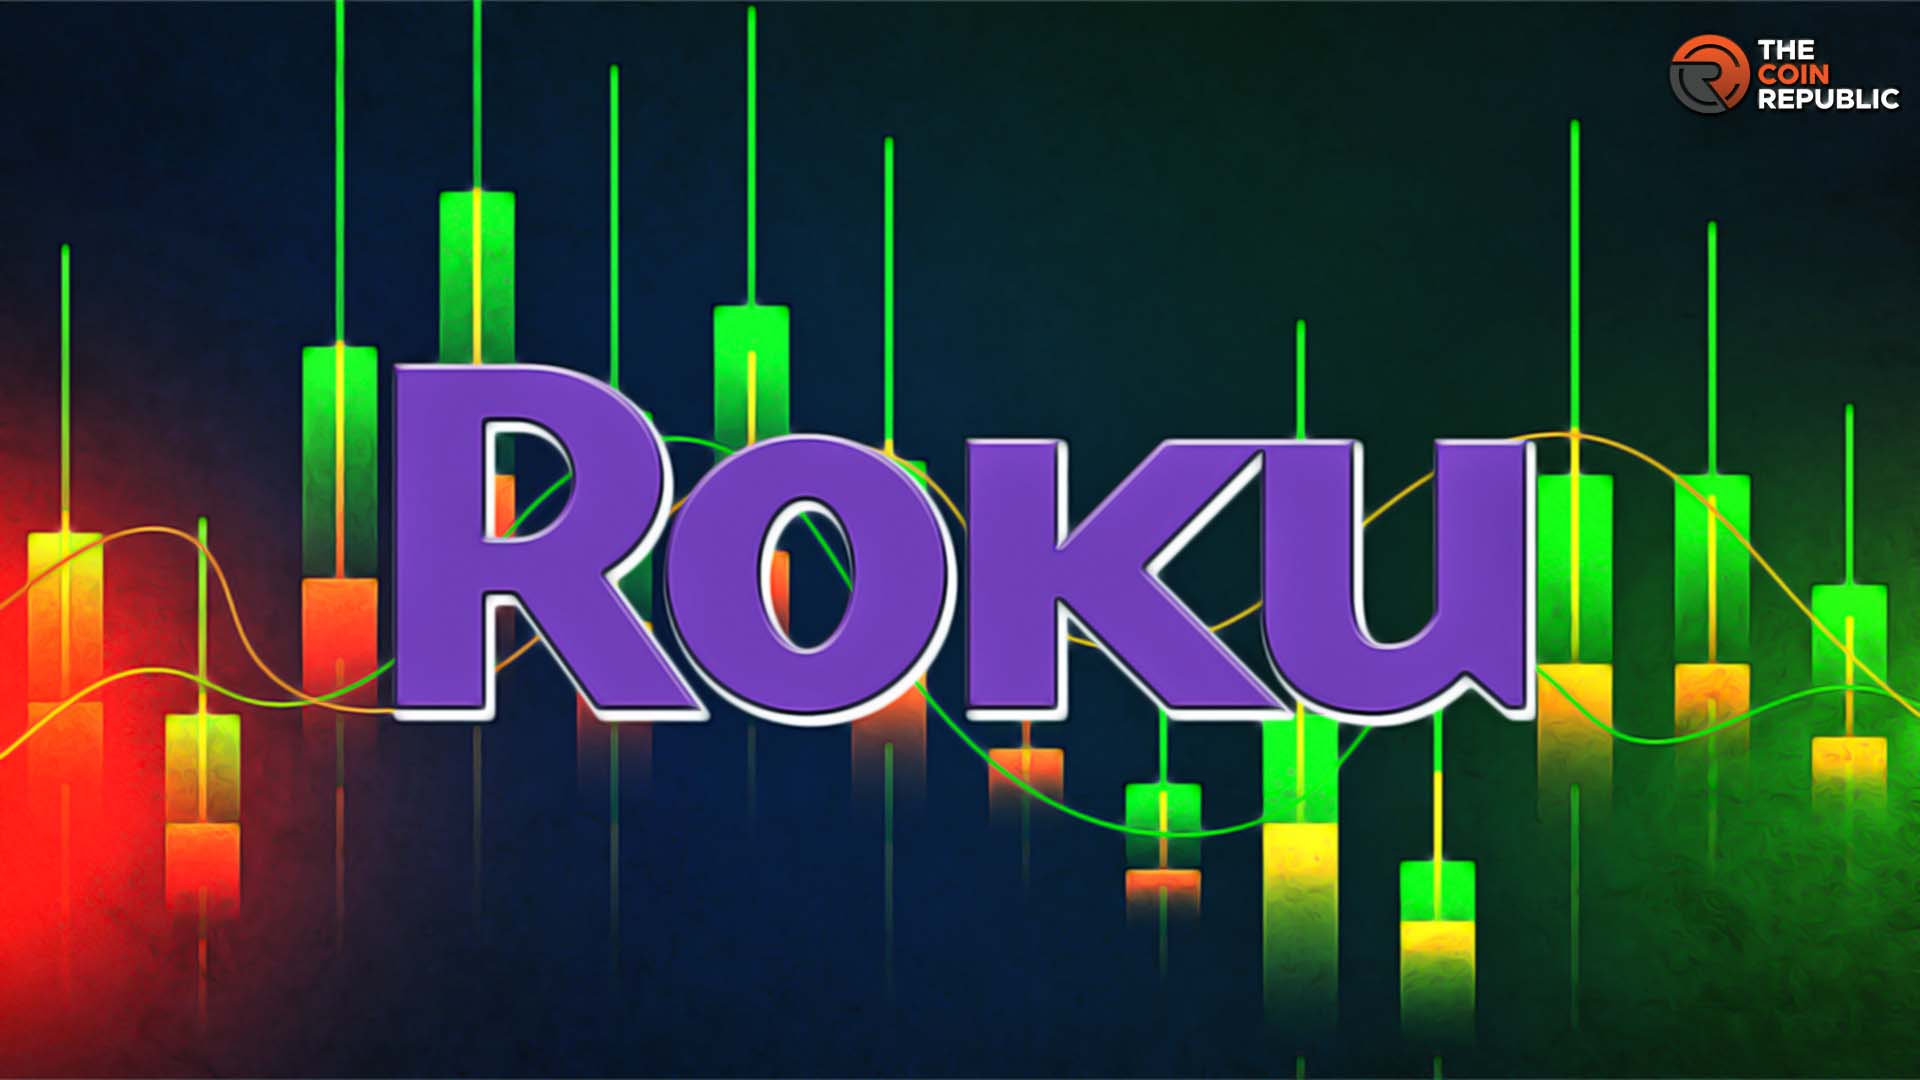 Roku Stock Price Prediction: Will ROKU Reach $100 by 2023 End?